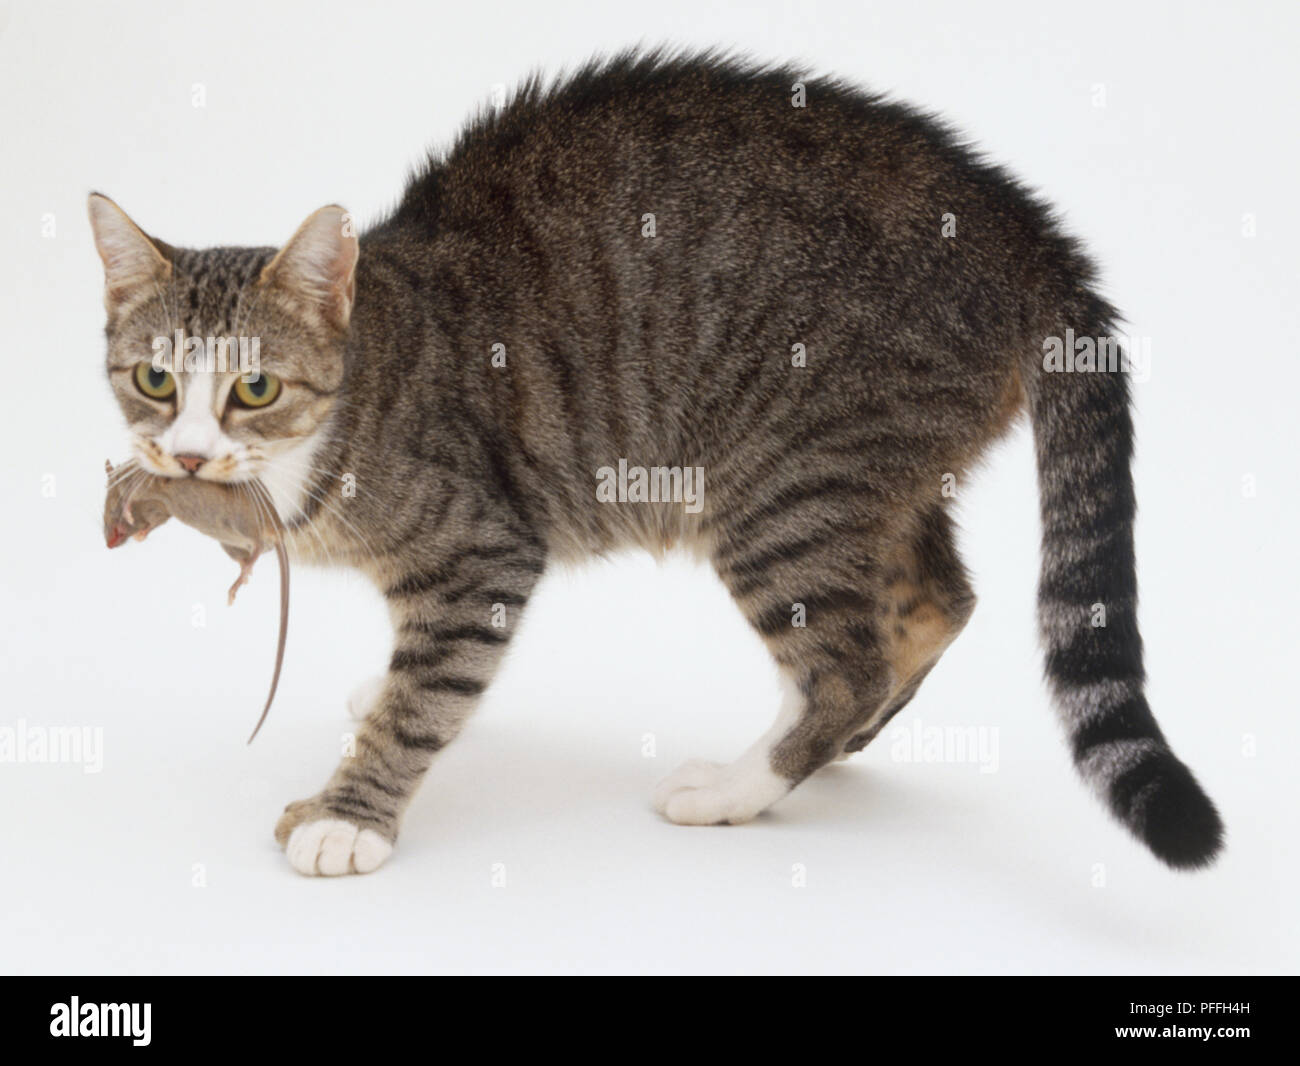 Tabby et blanc shorthair domestique chat (Felis silvestris catus), debout avec une souris morte dans sa bouche, looking at camera, vue de côté. Banque D'Images